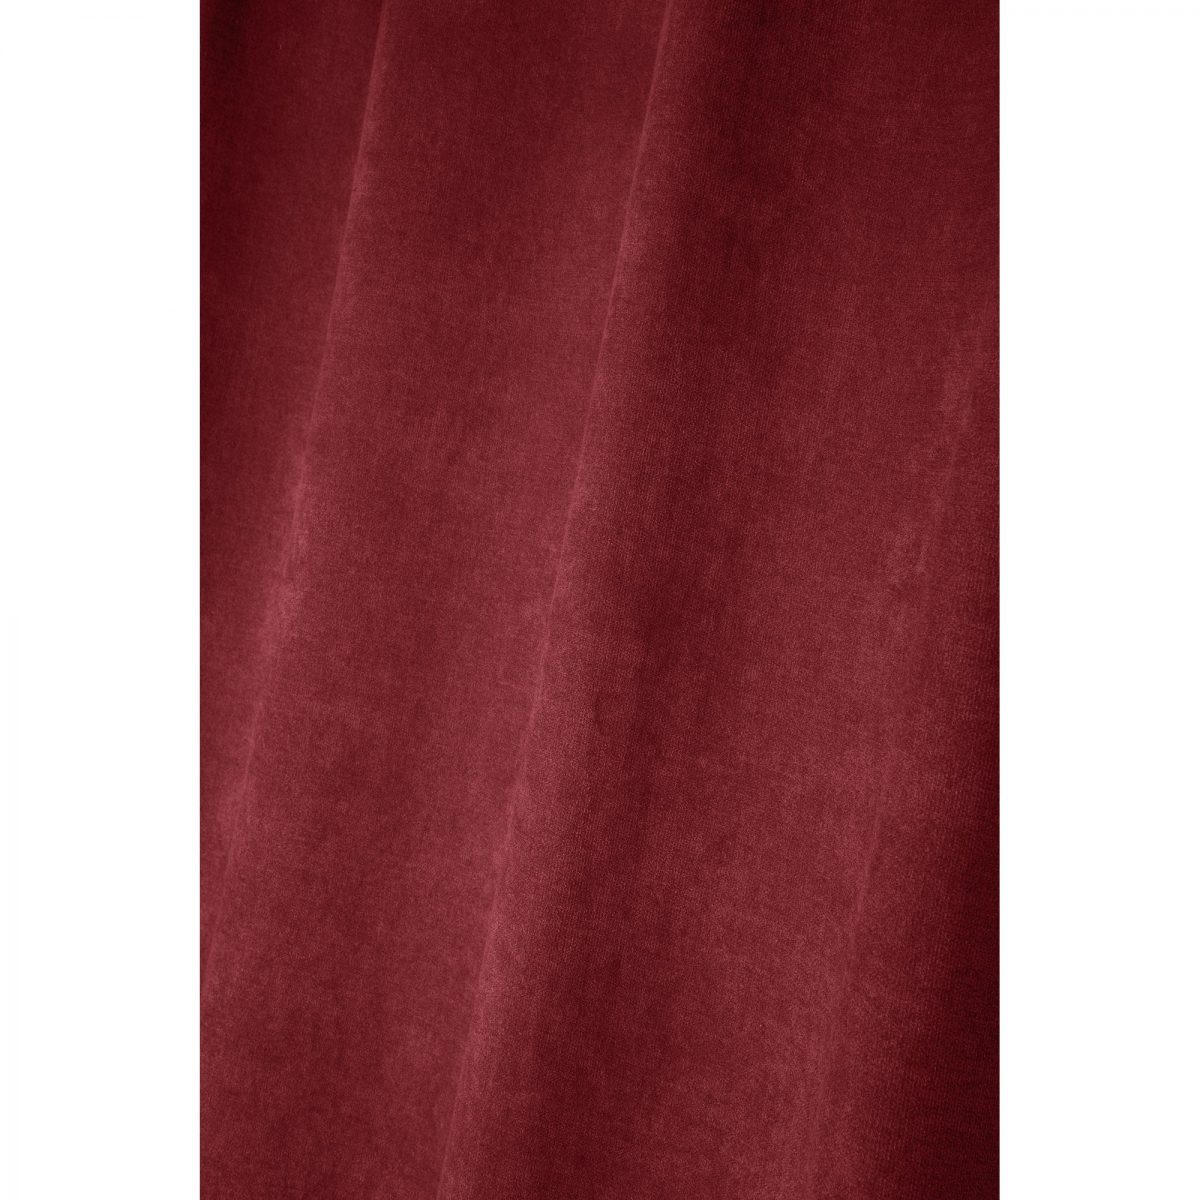 draperie bordeaux confectionata Grammont Rouge